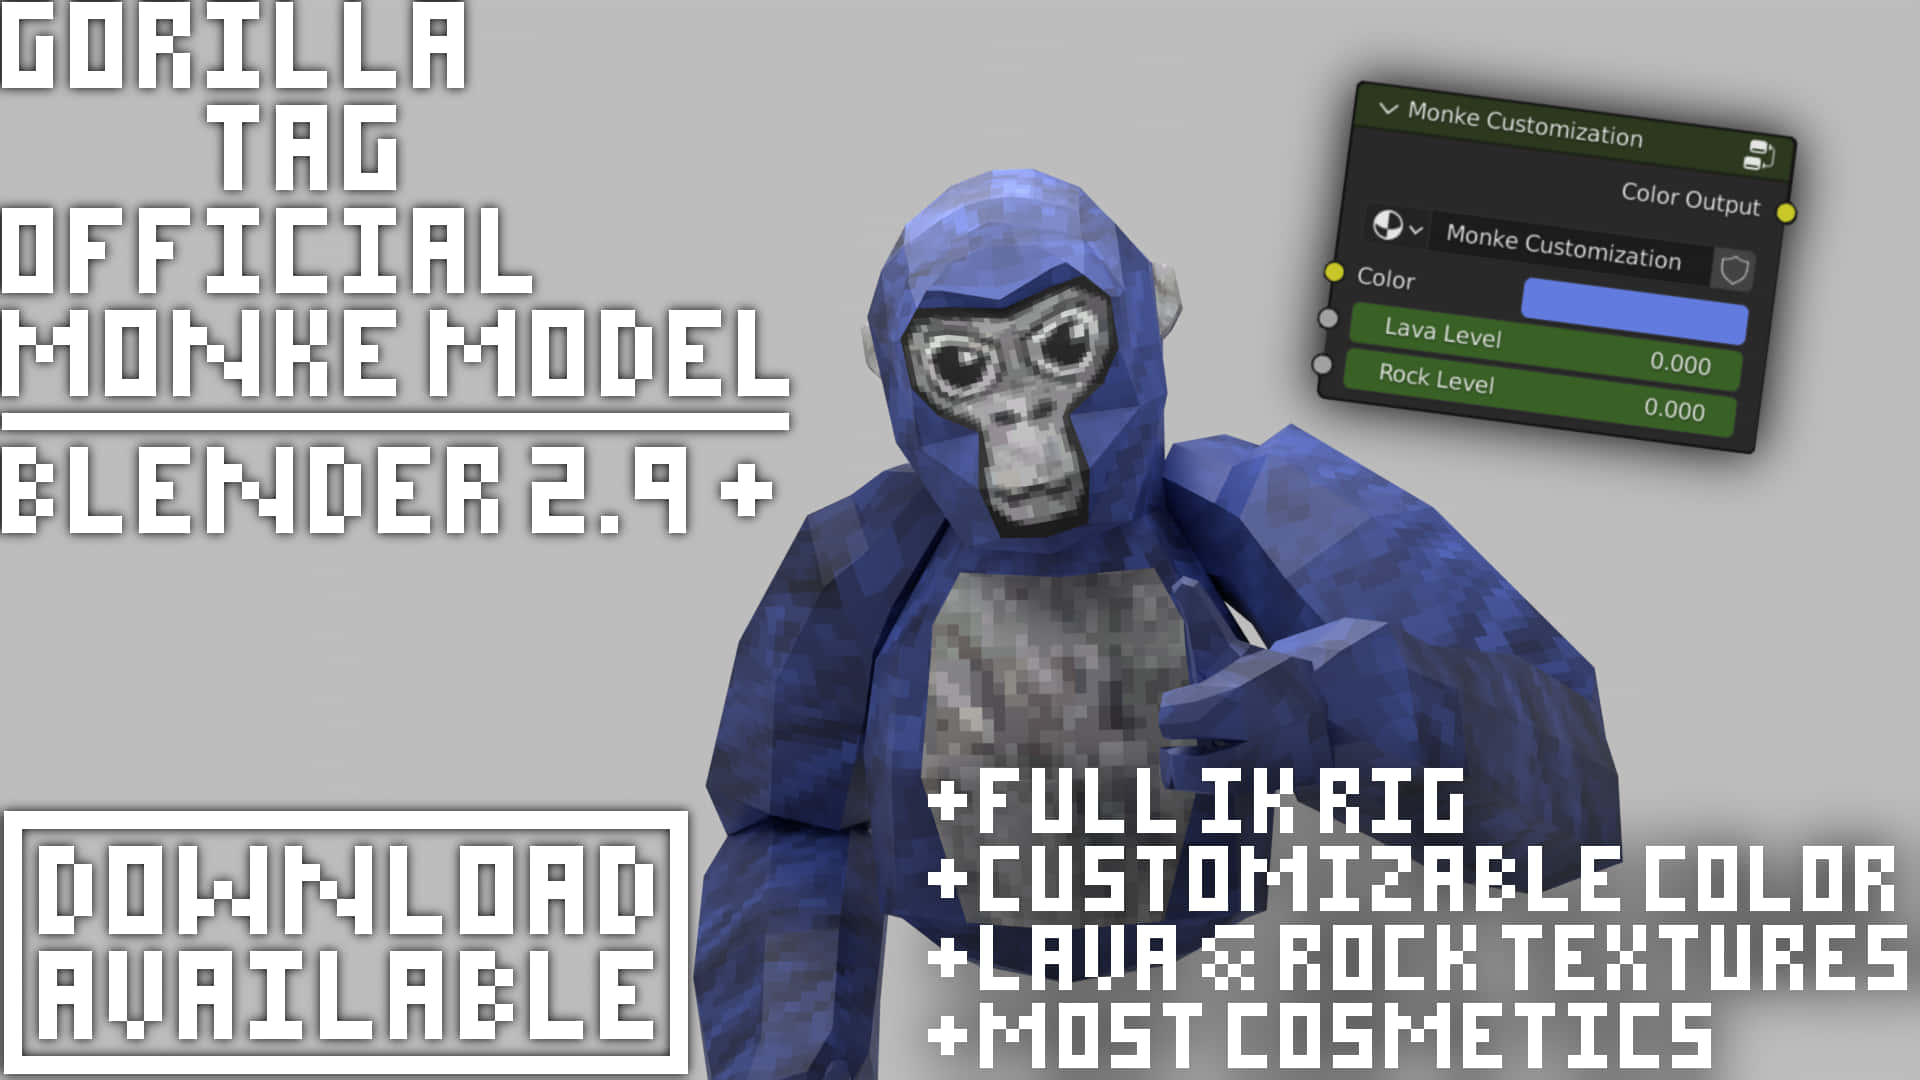 Gorilla Tag Official Model - Elegancer Model 9